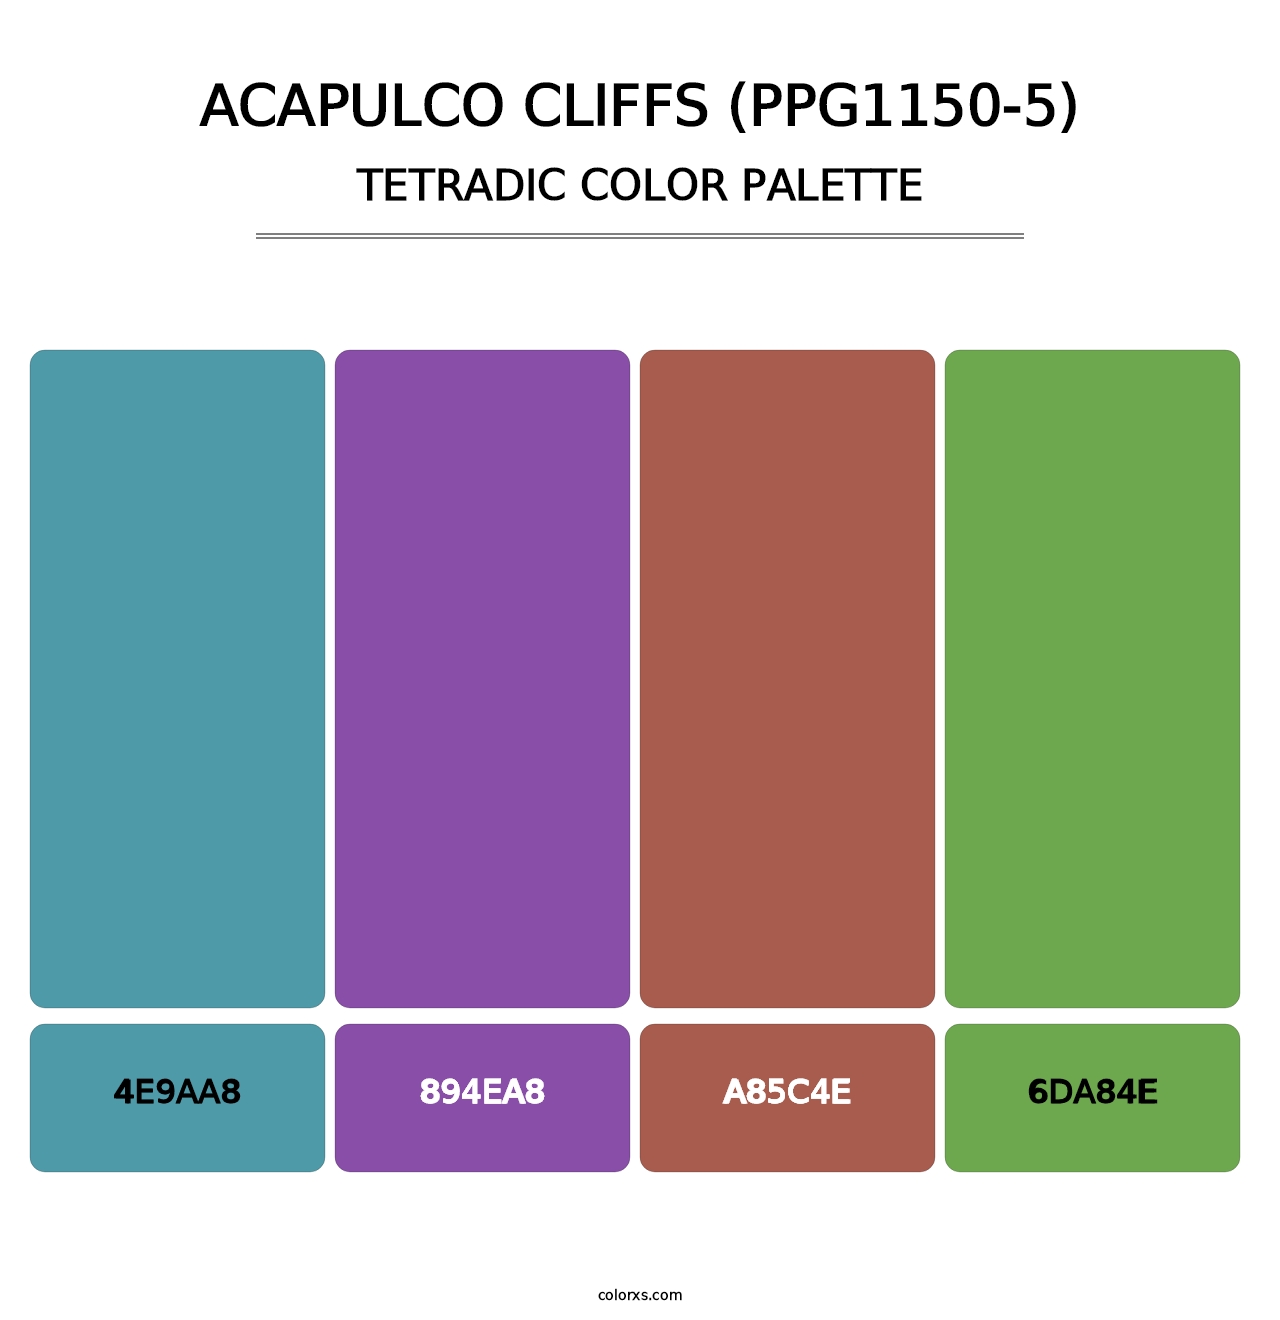 Acapulco Cliffs (PPG1150-5) - Tetradic Color Palette